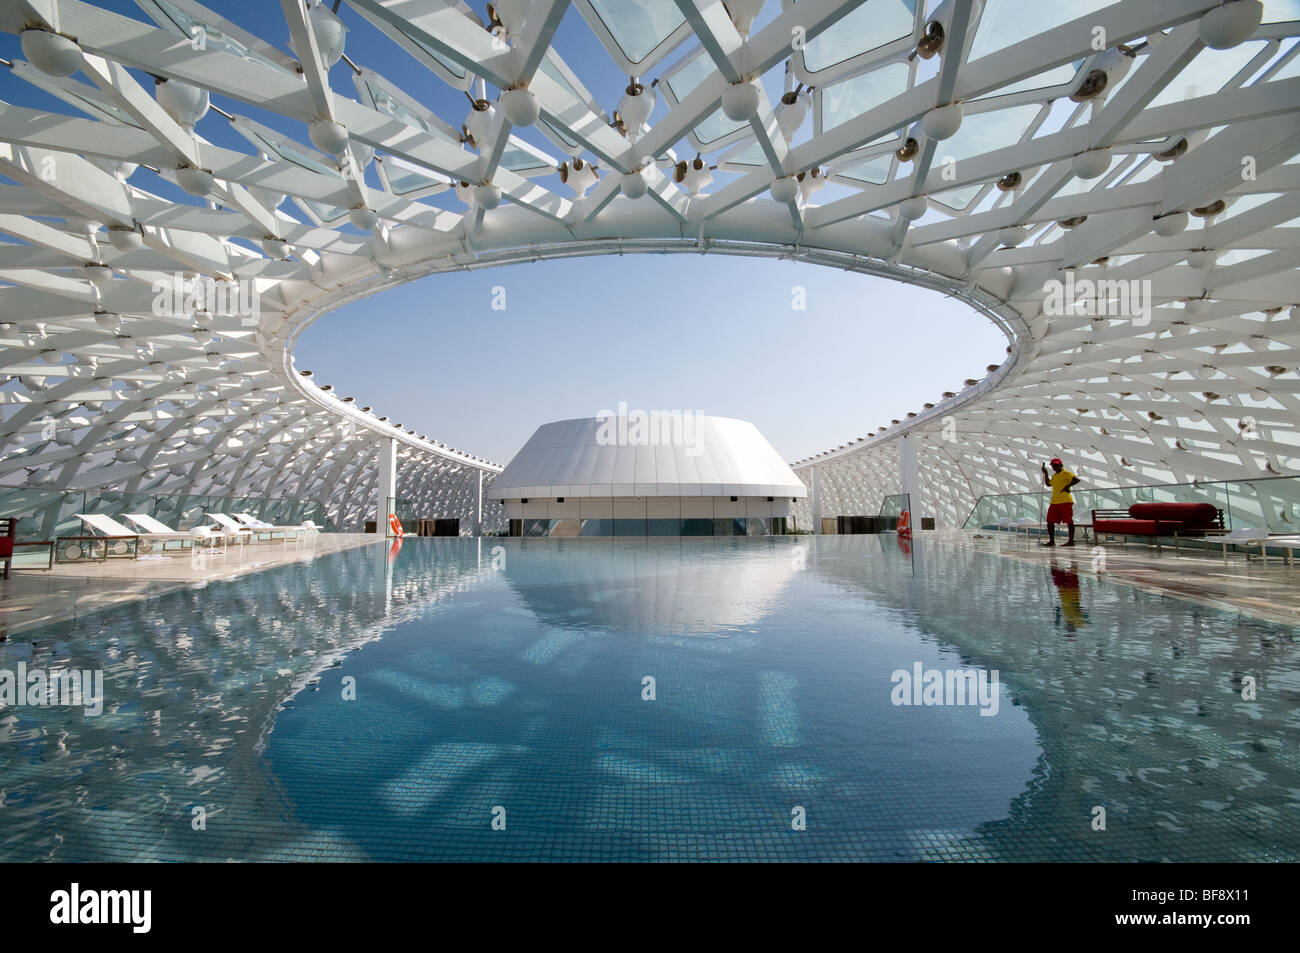 La moderna architettura di Yas Viceroy Hotel sul gran premio di Formula Uno in pista a Yas Island, Abu Dhabi, Emirati arabi uniti Foto Stock